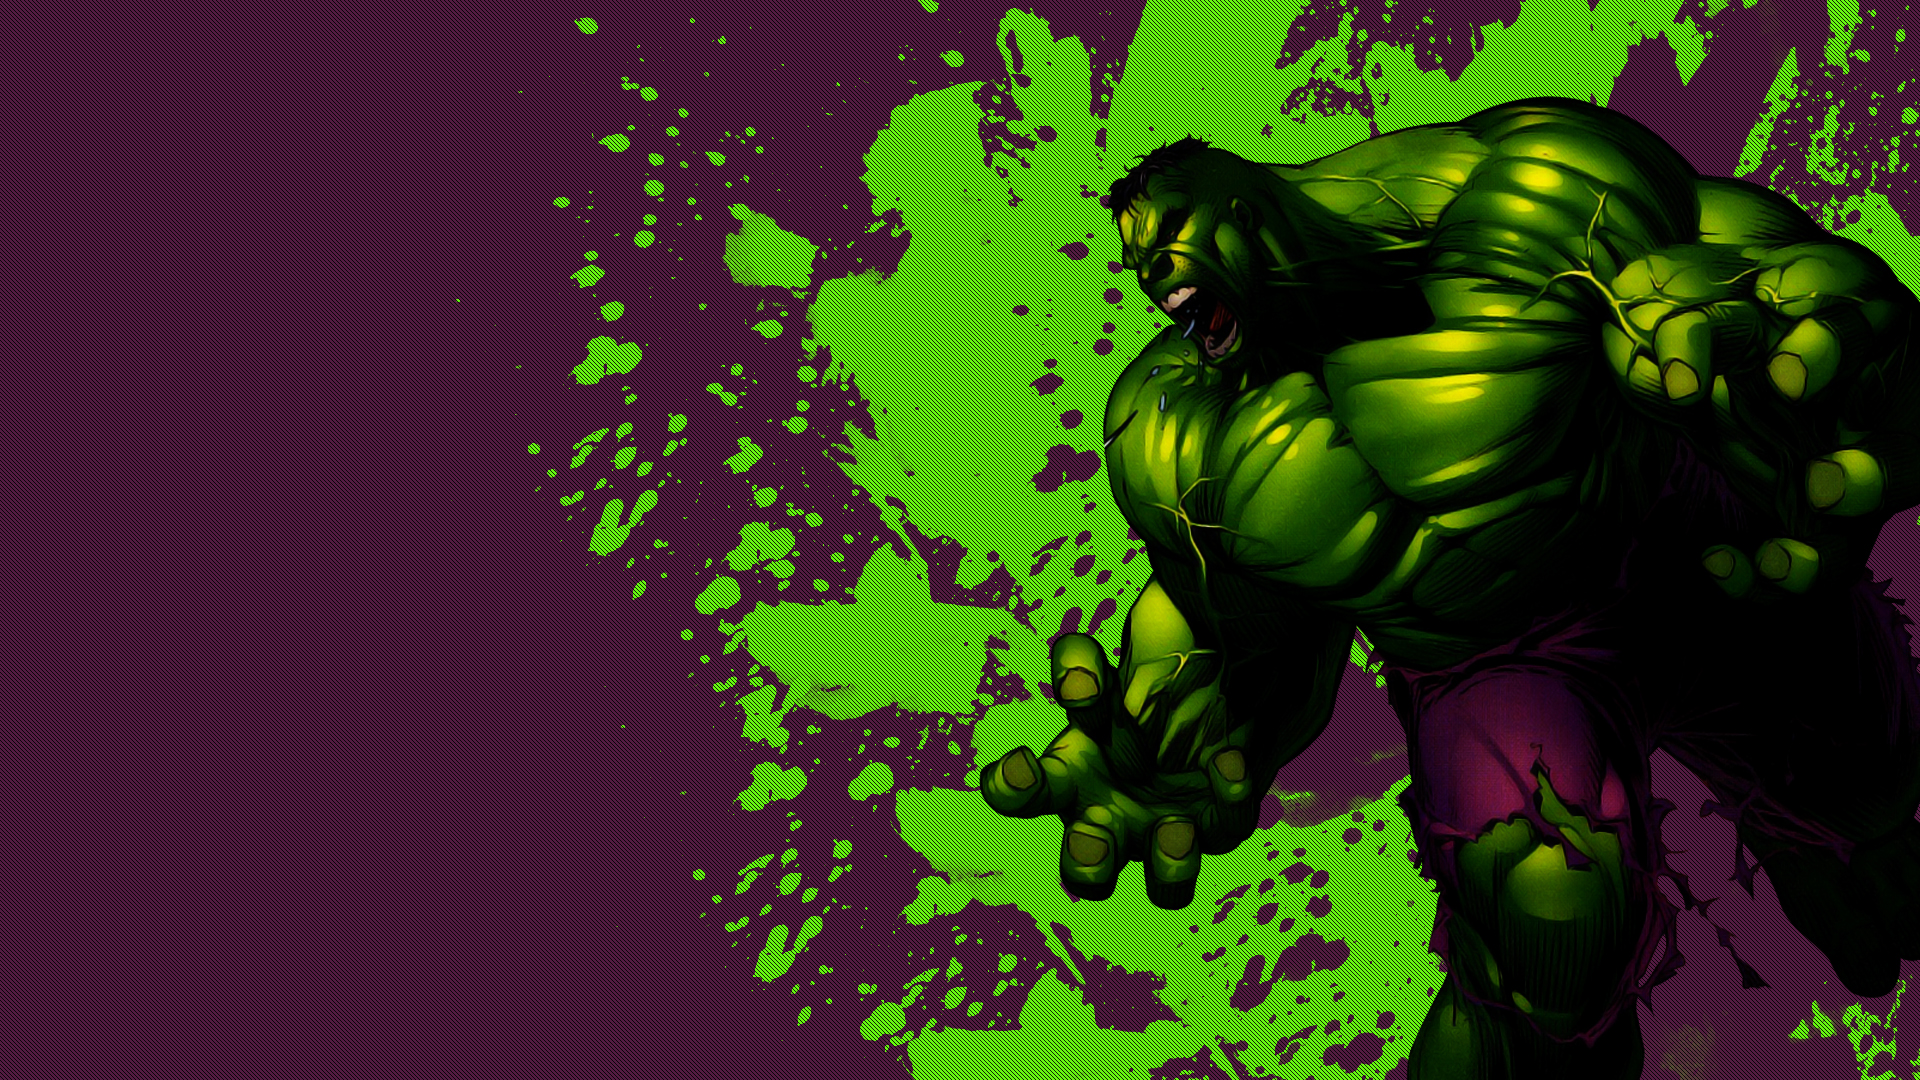 Incredible Hulk Wallpaper For Desktop Jpg